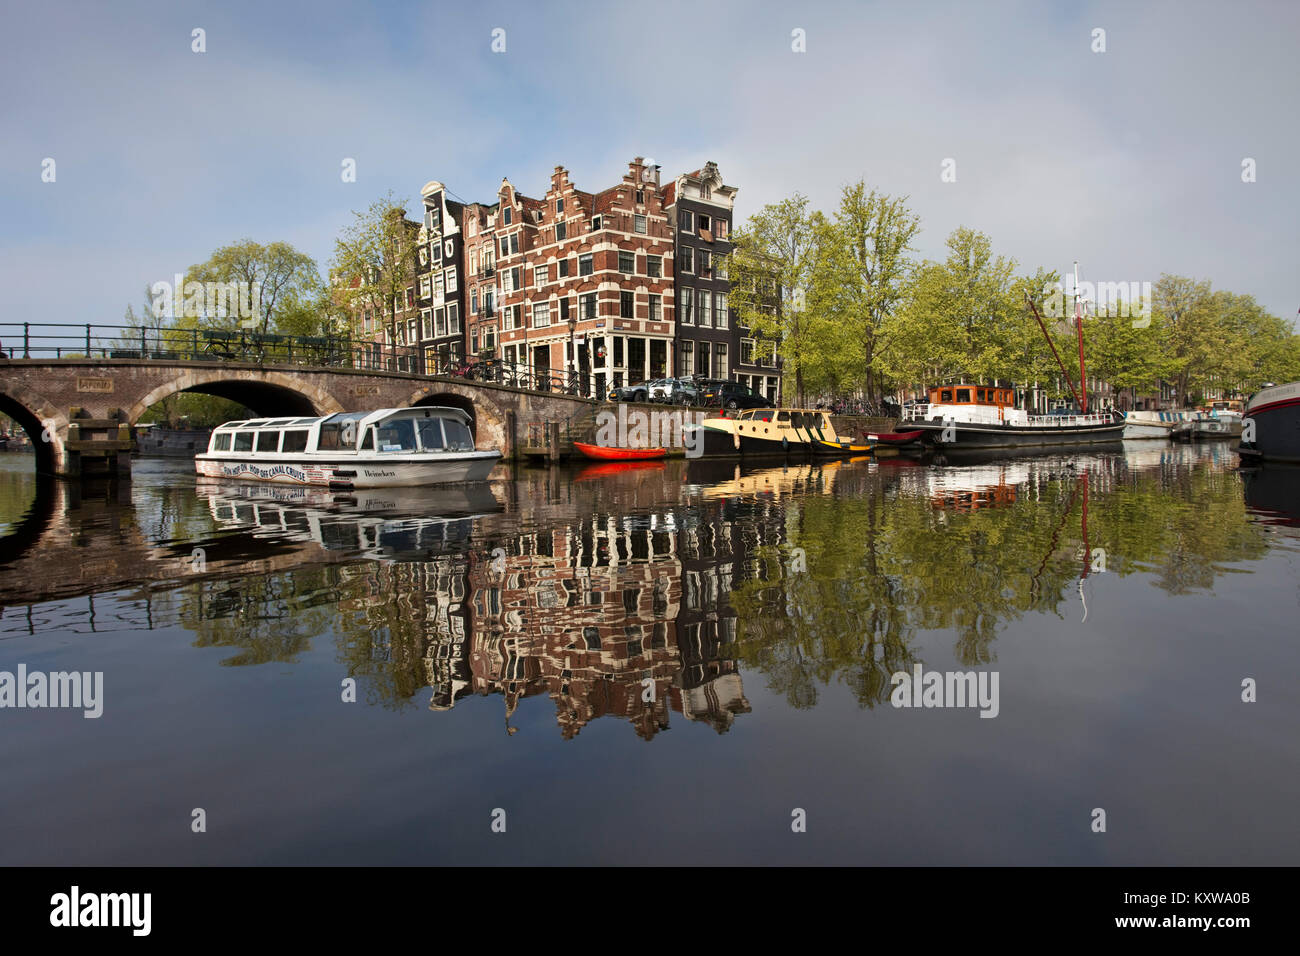 Les Pays-Bas, Amsterdam, âge d'or des maisons à canal appelé Brouwersgracht. UNESCO World Heritage Site. 17e siècle. Canal ou excursion en bateau. Banque D'Images